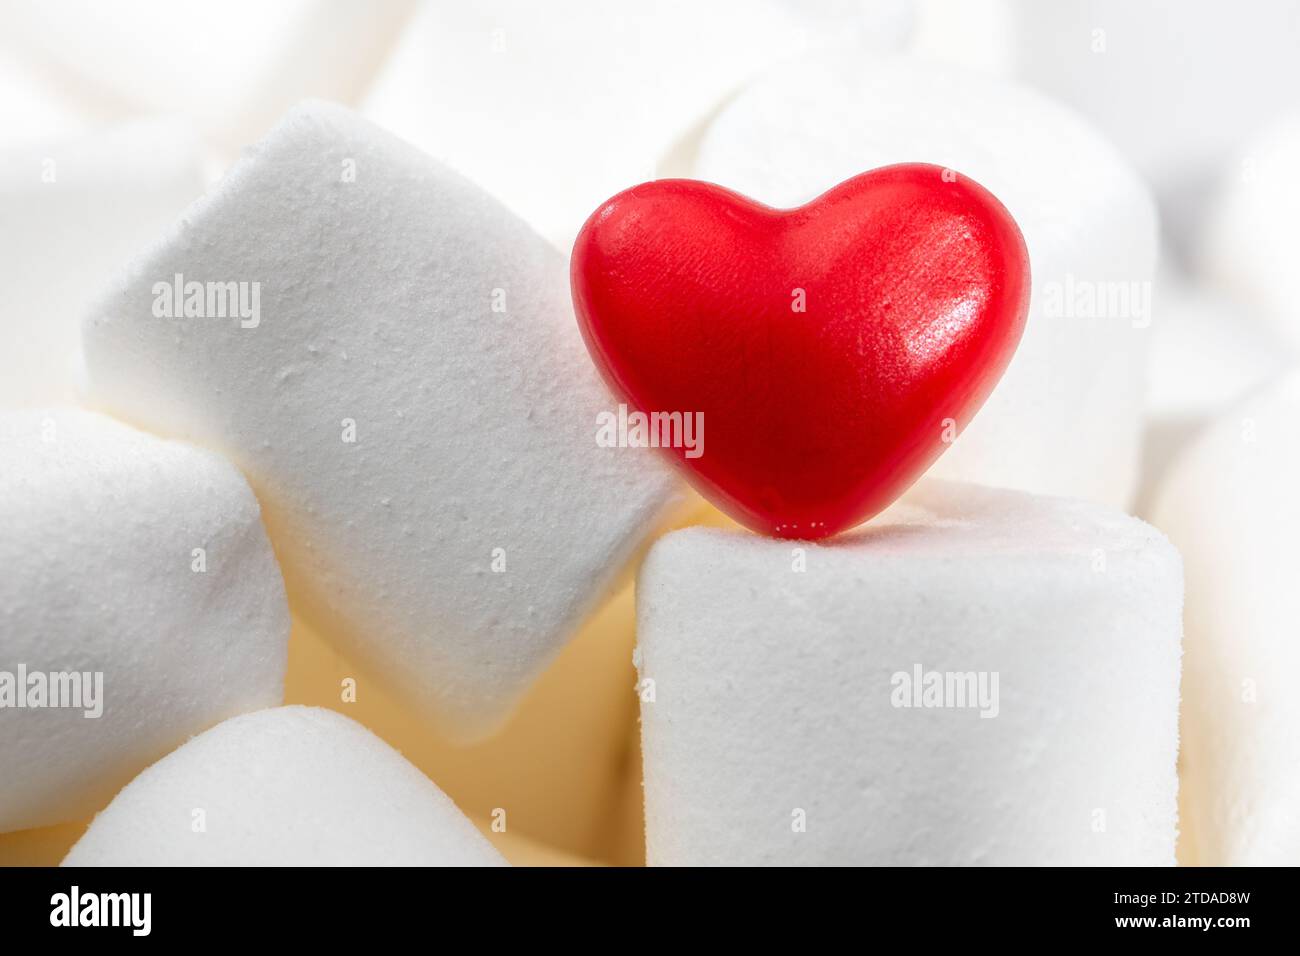 Sweet Love : célébration de la Saint-Valentin avec bonbons et guimauves, concept - mariage - Amour - coeur rouge - Valentine Banque D'Images